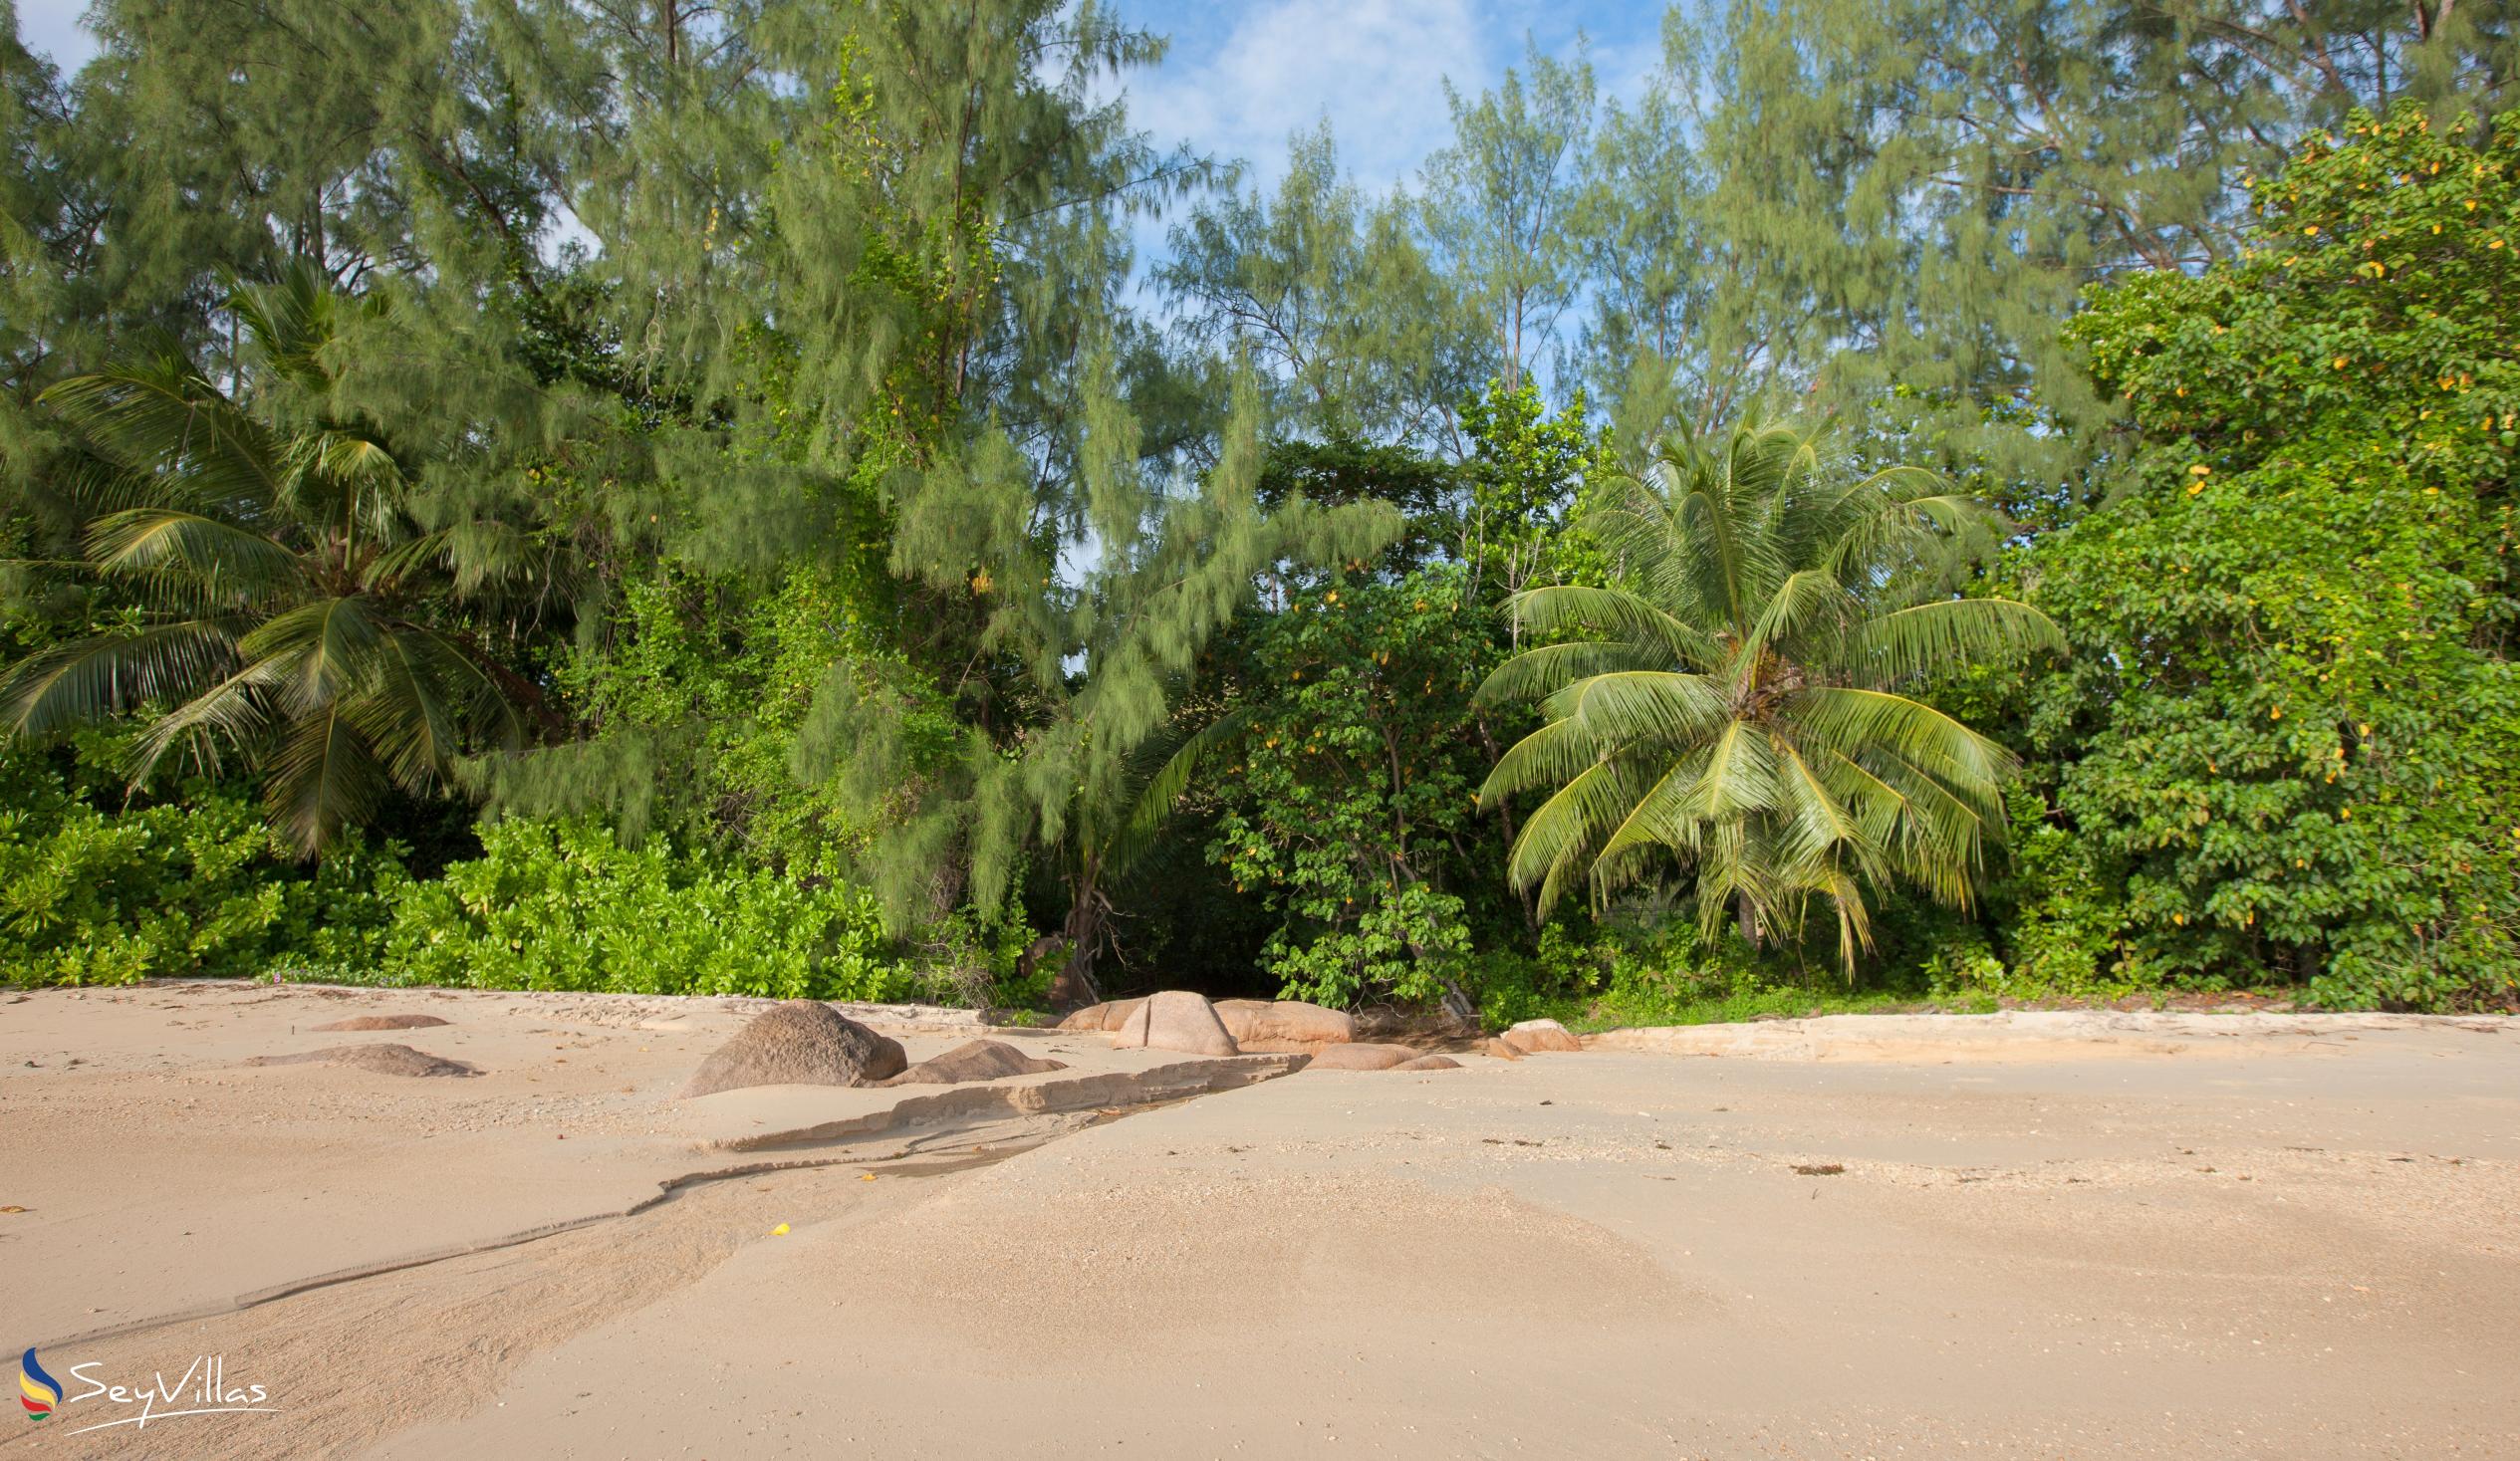 Foto 7: Anse Pasquière - Praslin (Seychelles)